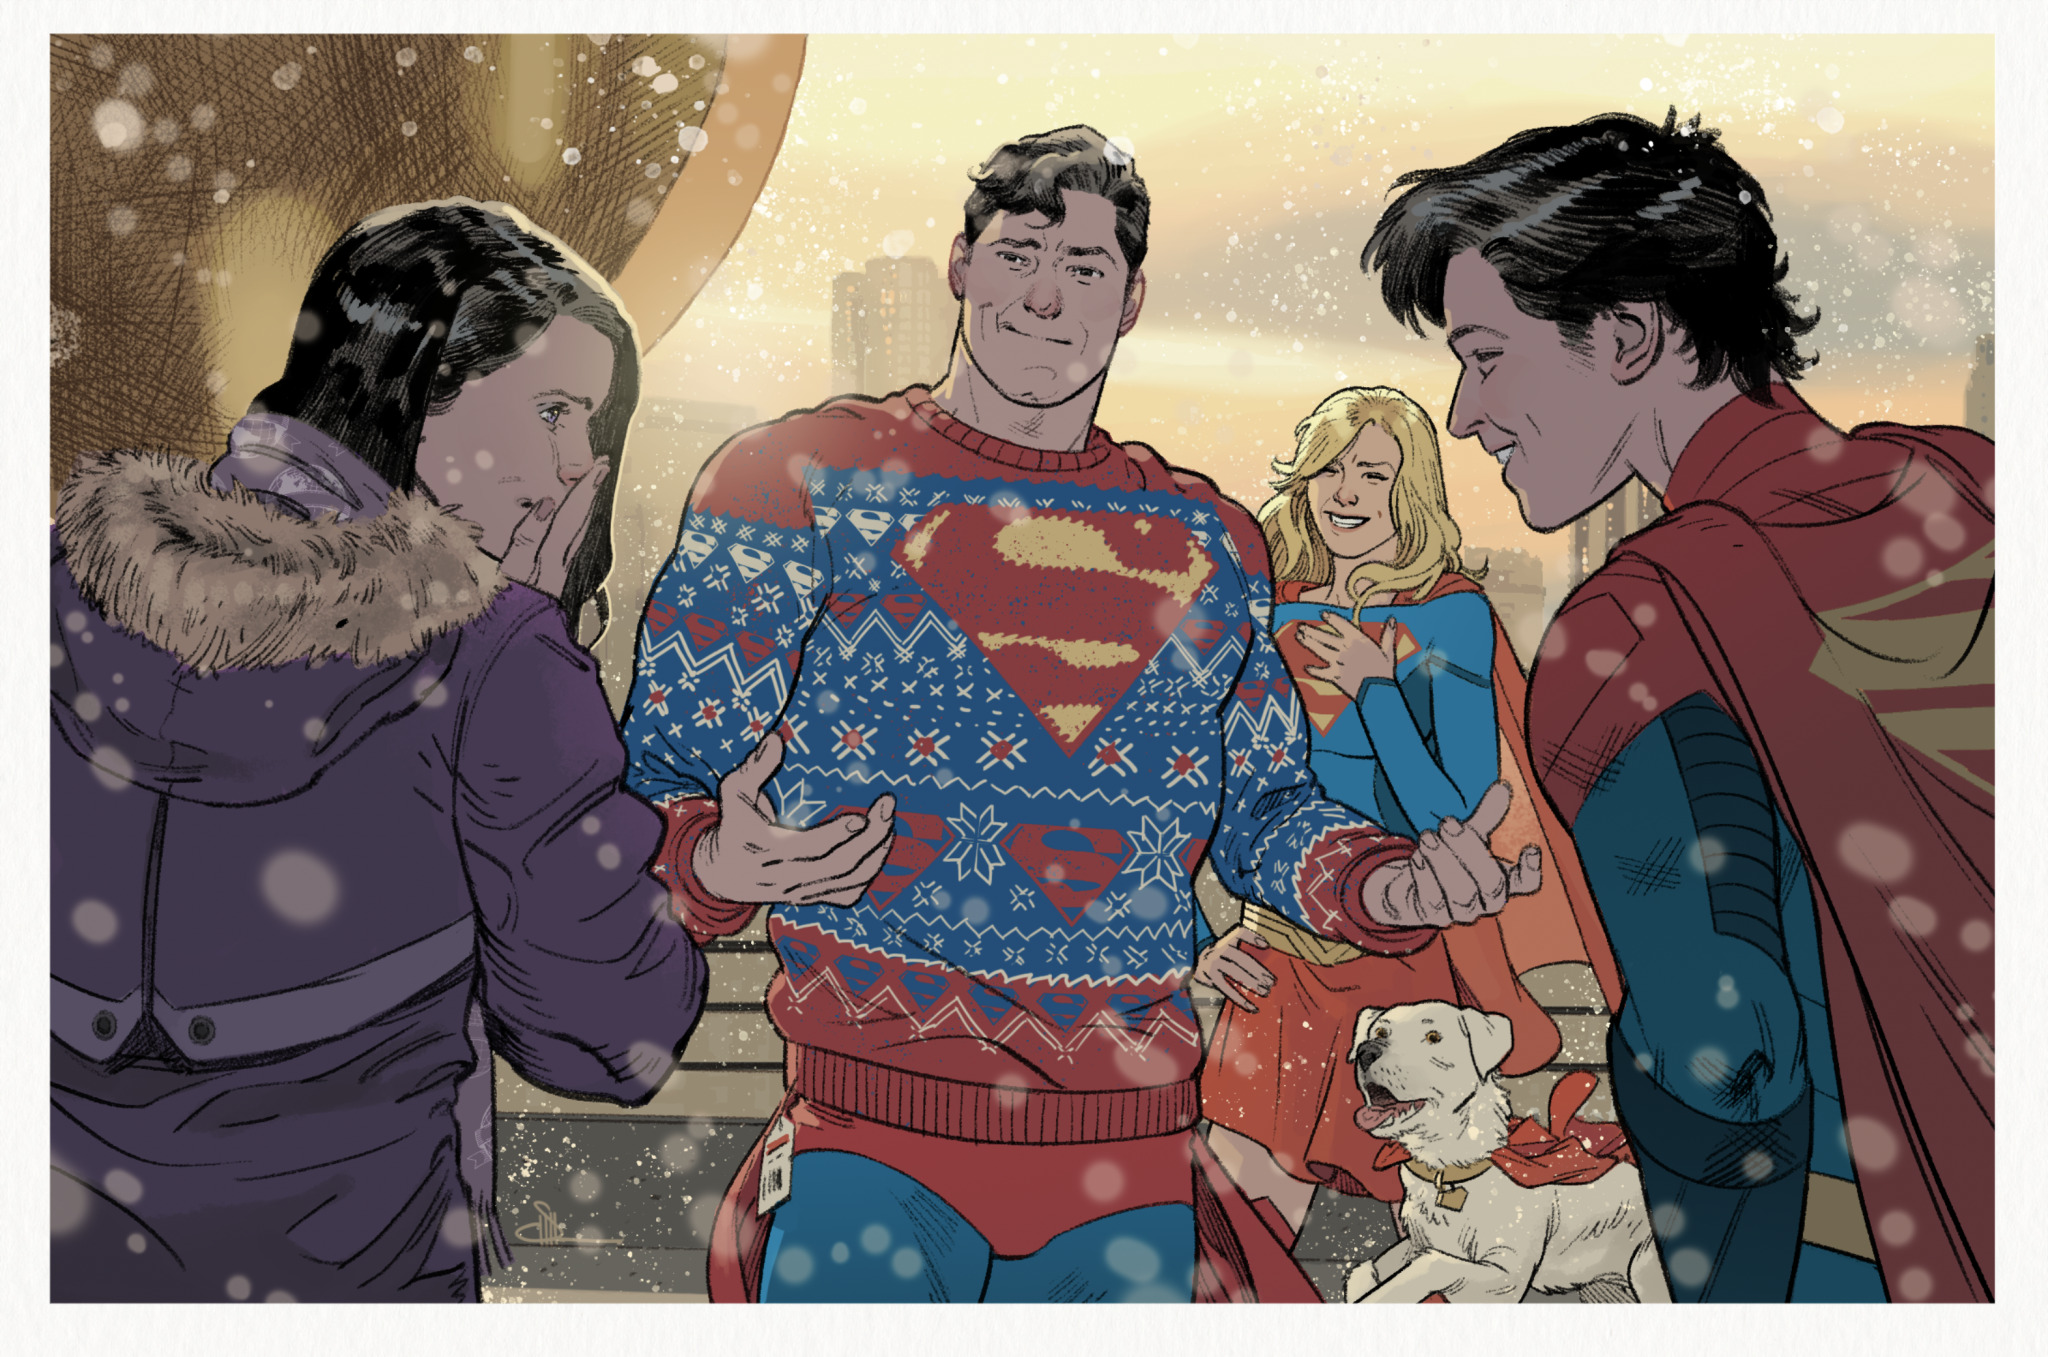 Comics Superman: Son of Kal-El HD Wallpaper | Background Image